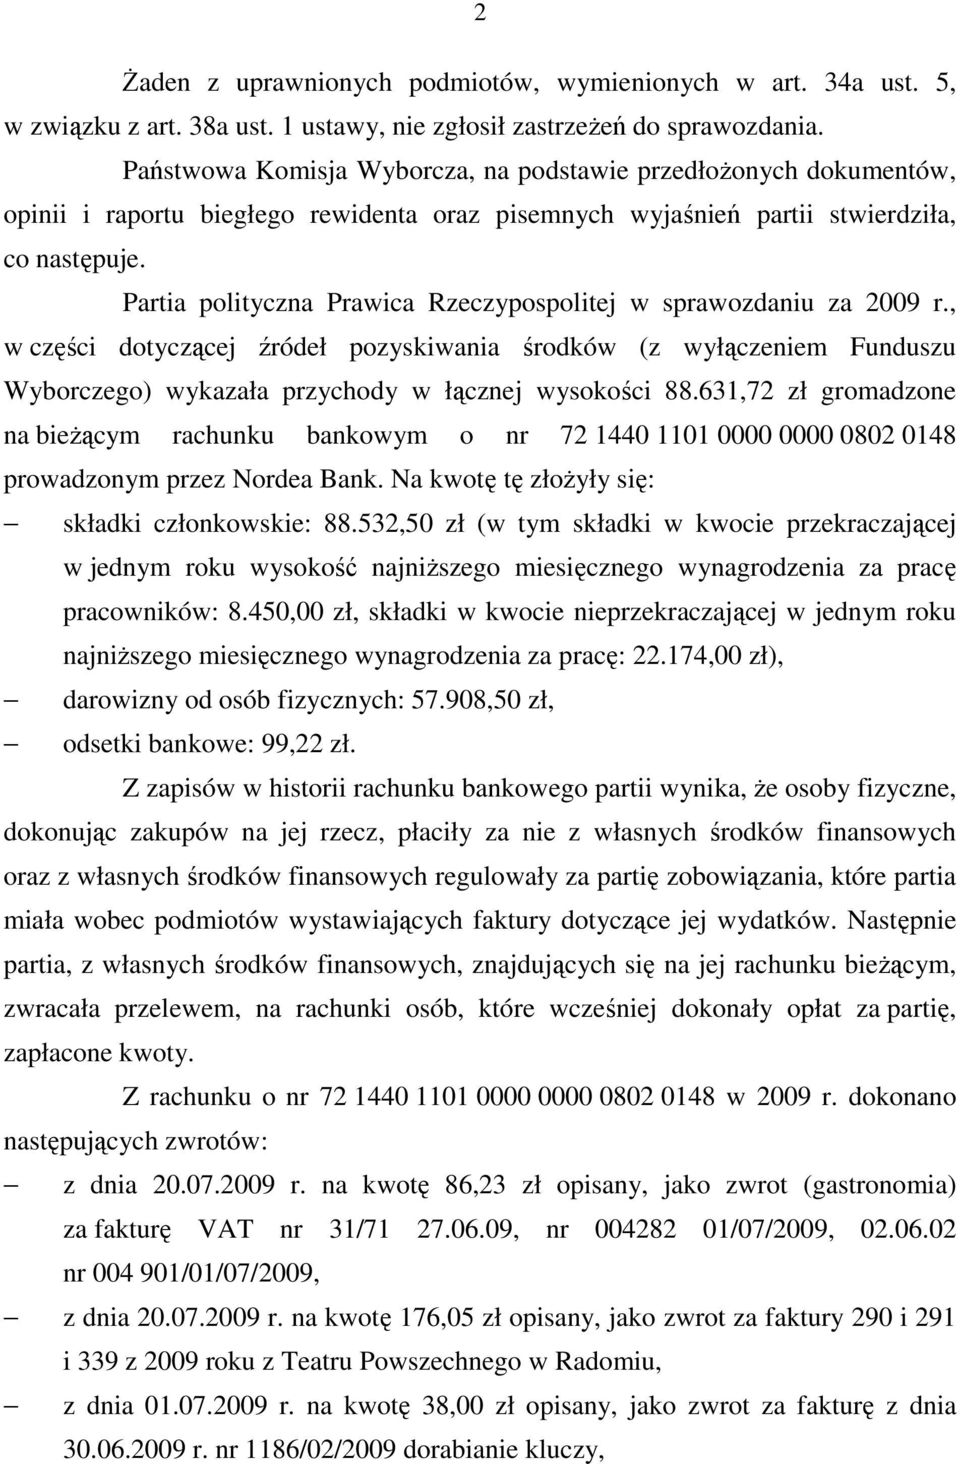 Partia polityczna Prawica Rzeczypospolitej w sprawozdaniu za 2009 r., w części dotyczącej źródeł pozyskiwania środków (z wyłączeniem Funduszu Wyborczego) wykazała przychody w łącznej wysokości 88.